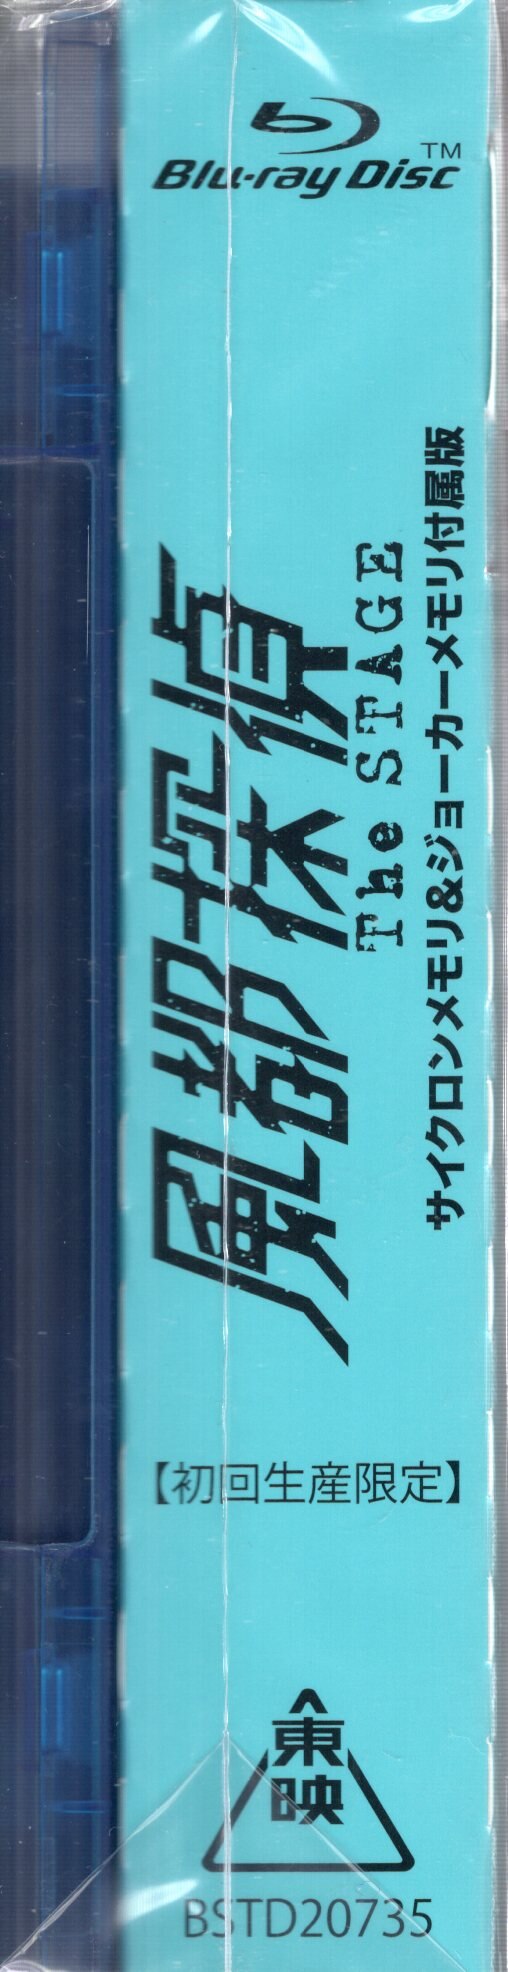 安いクリアランス Blu-ray 風都探偵 The STAGE サイクロンメモリ・ジョーカーメモリ | cohk.org.hk